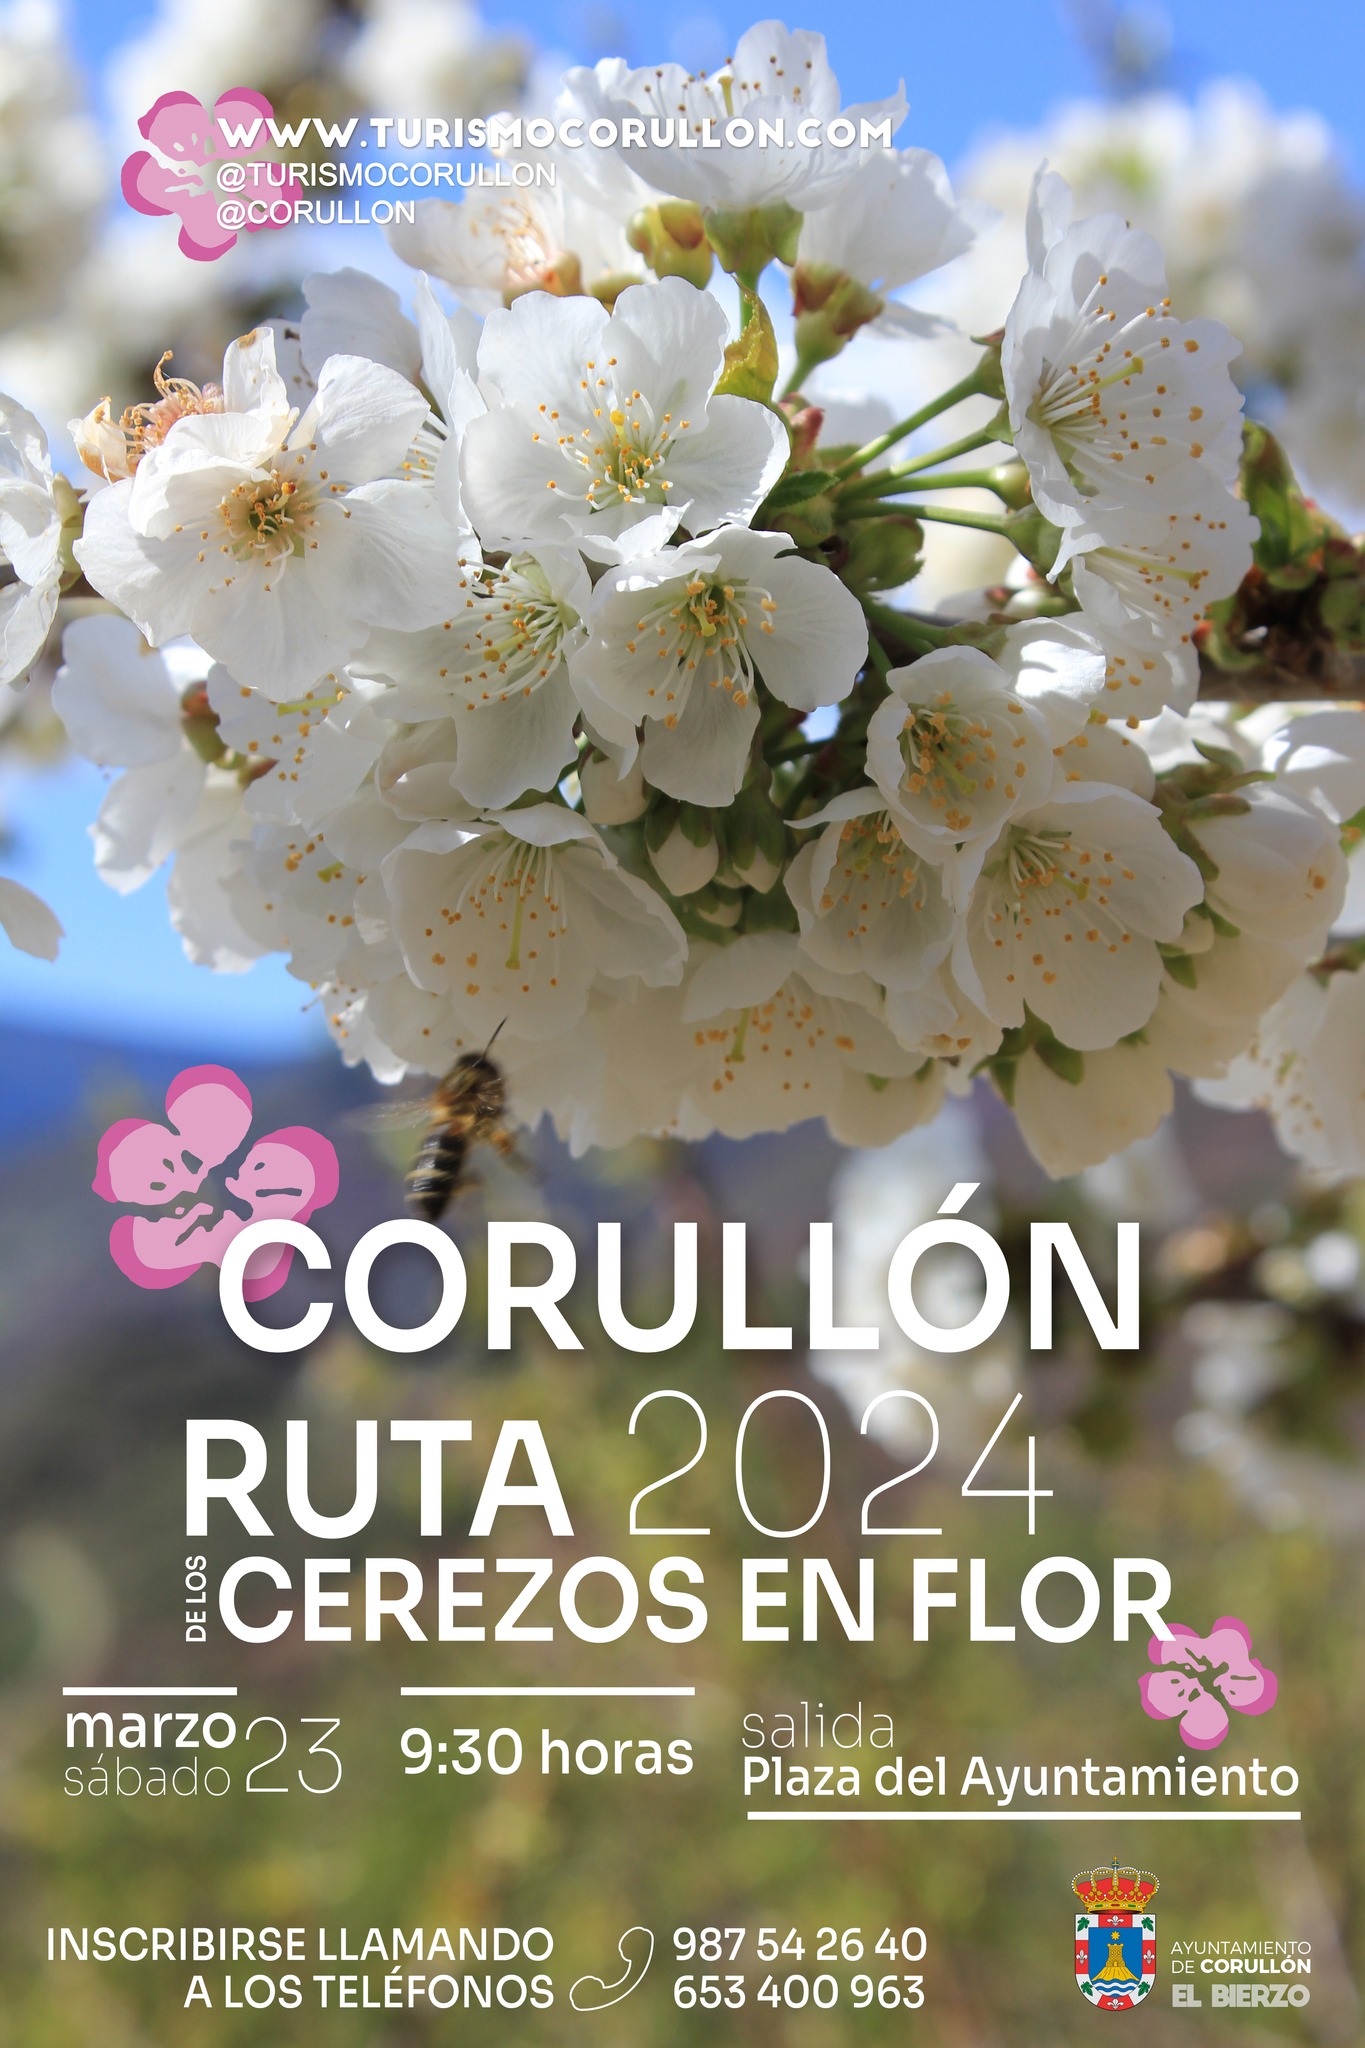 Corullón organiza el sábado una ruta para disfrutar la floración de los cerezos 8